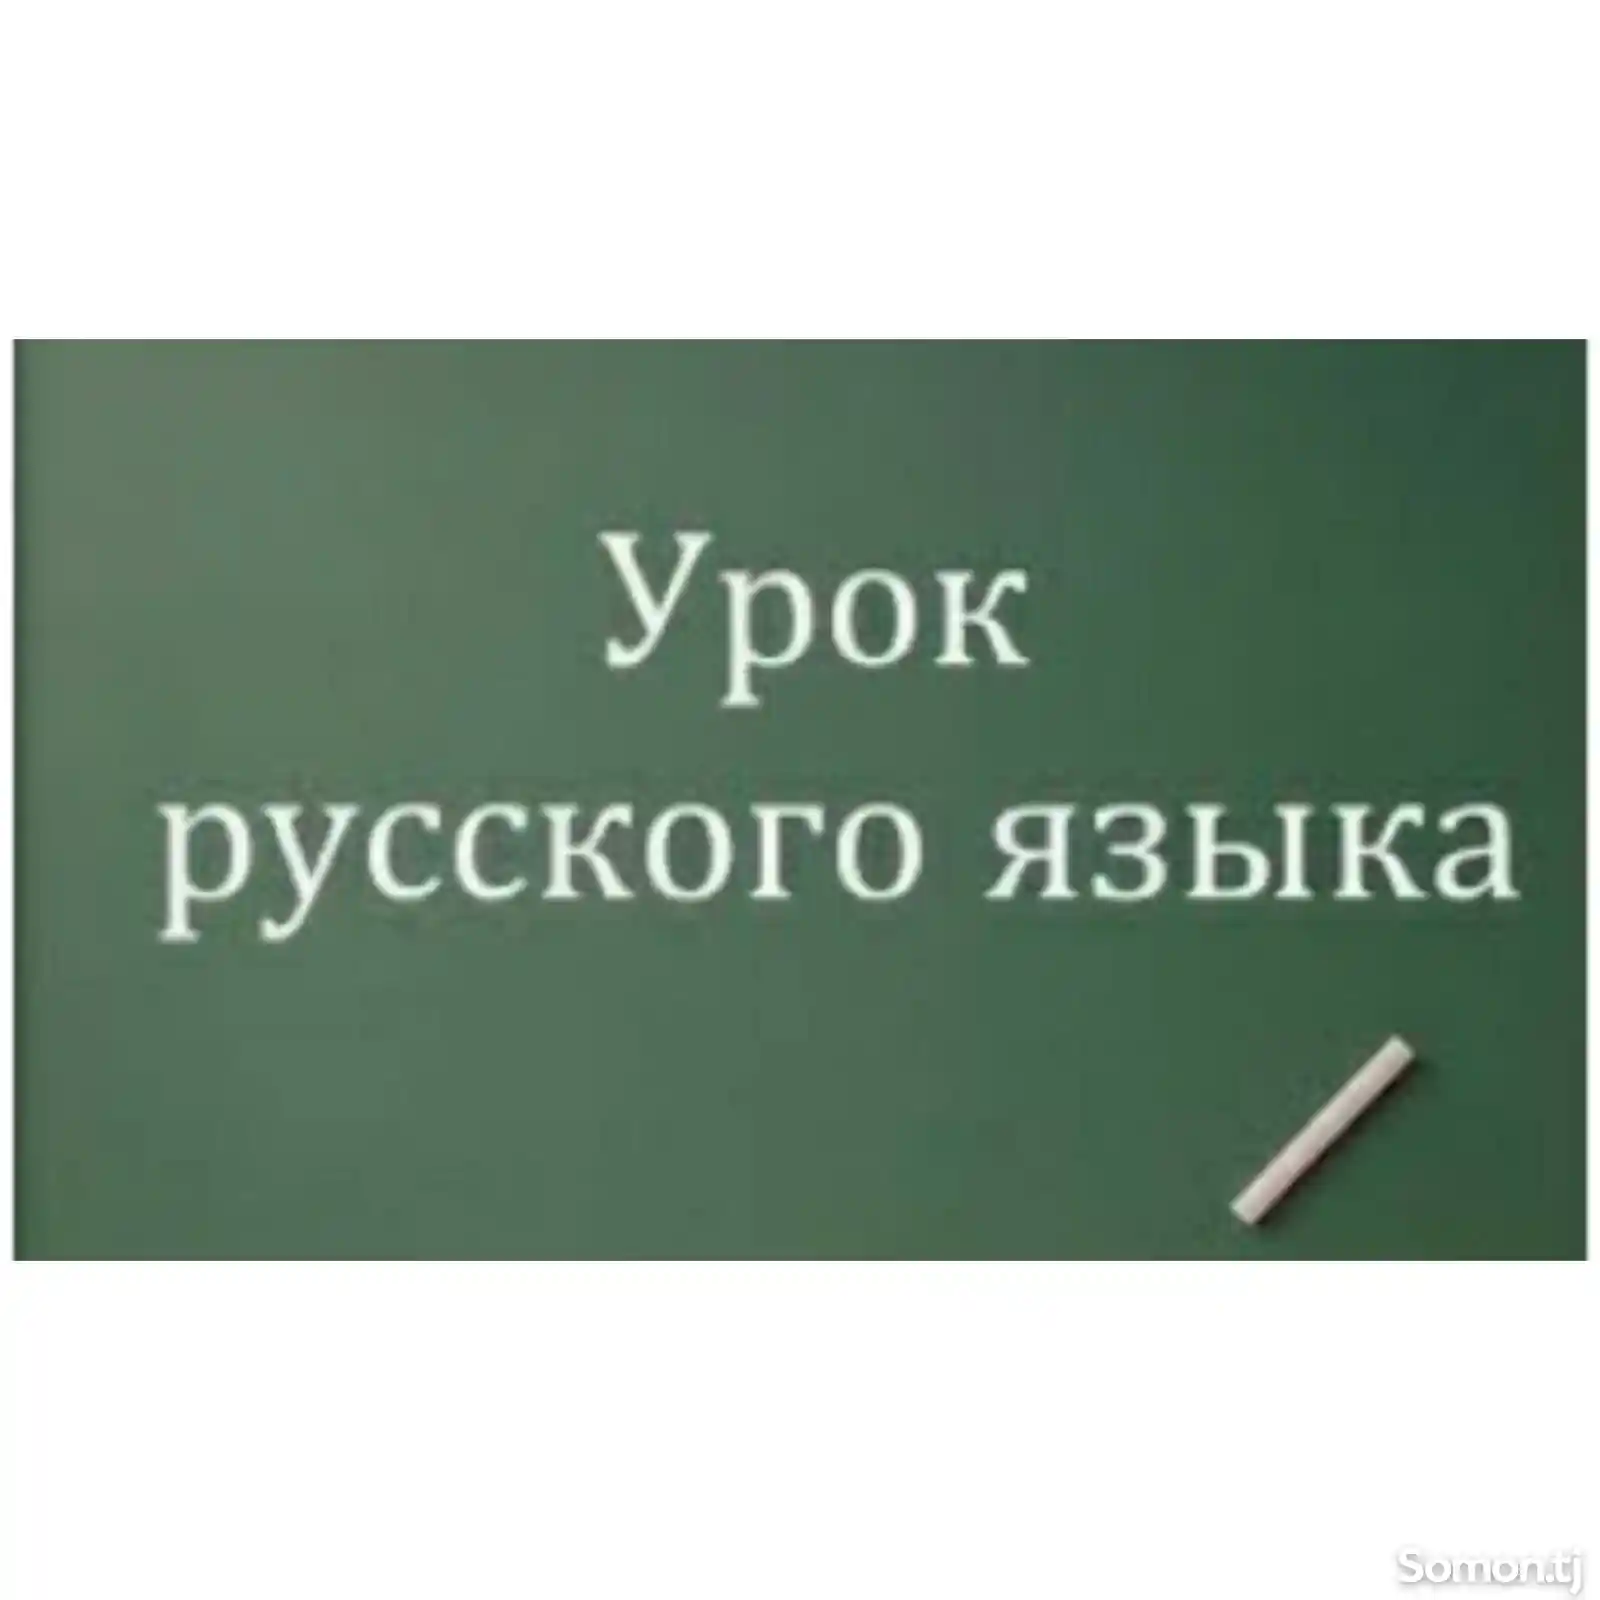 Уроки Русского языка индивидуально